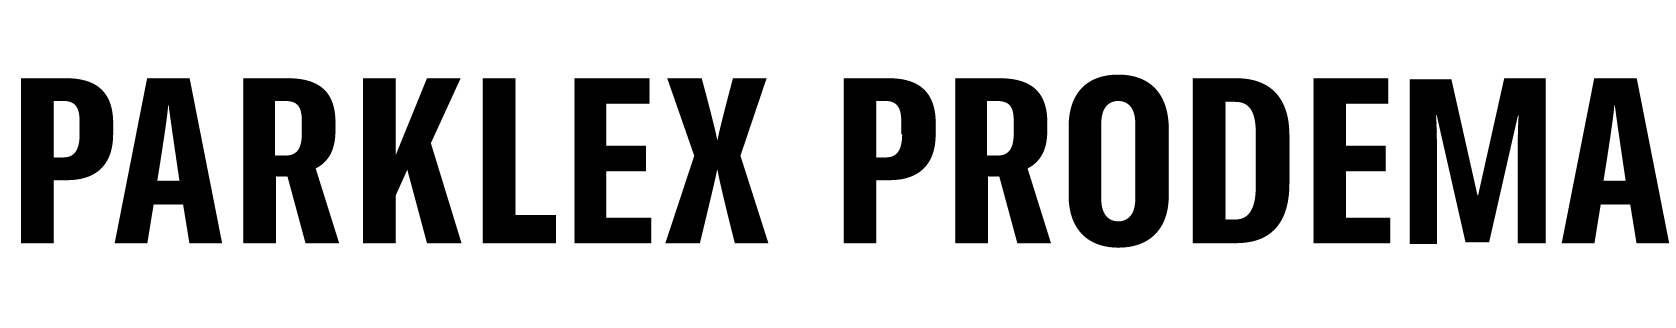 logo de parklex prodema